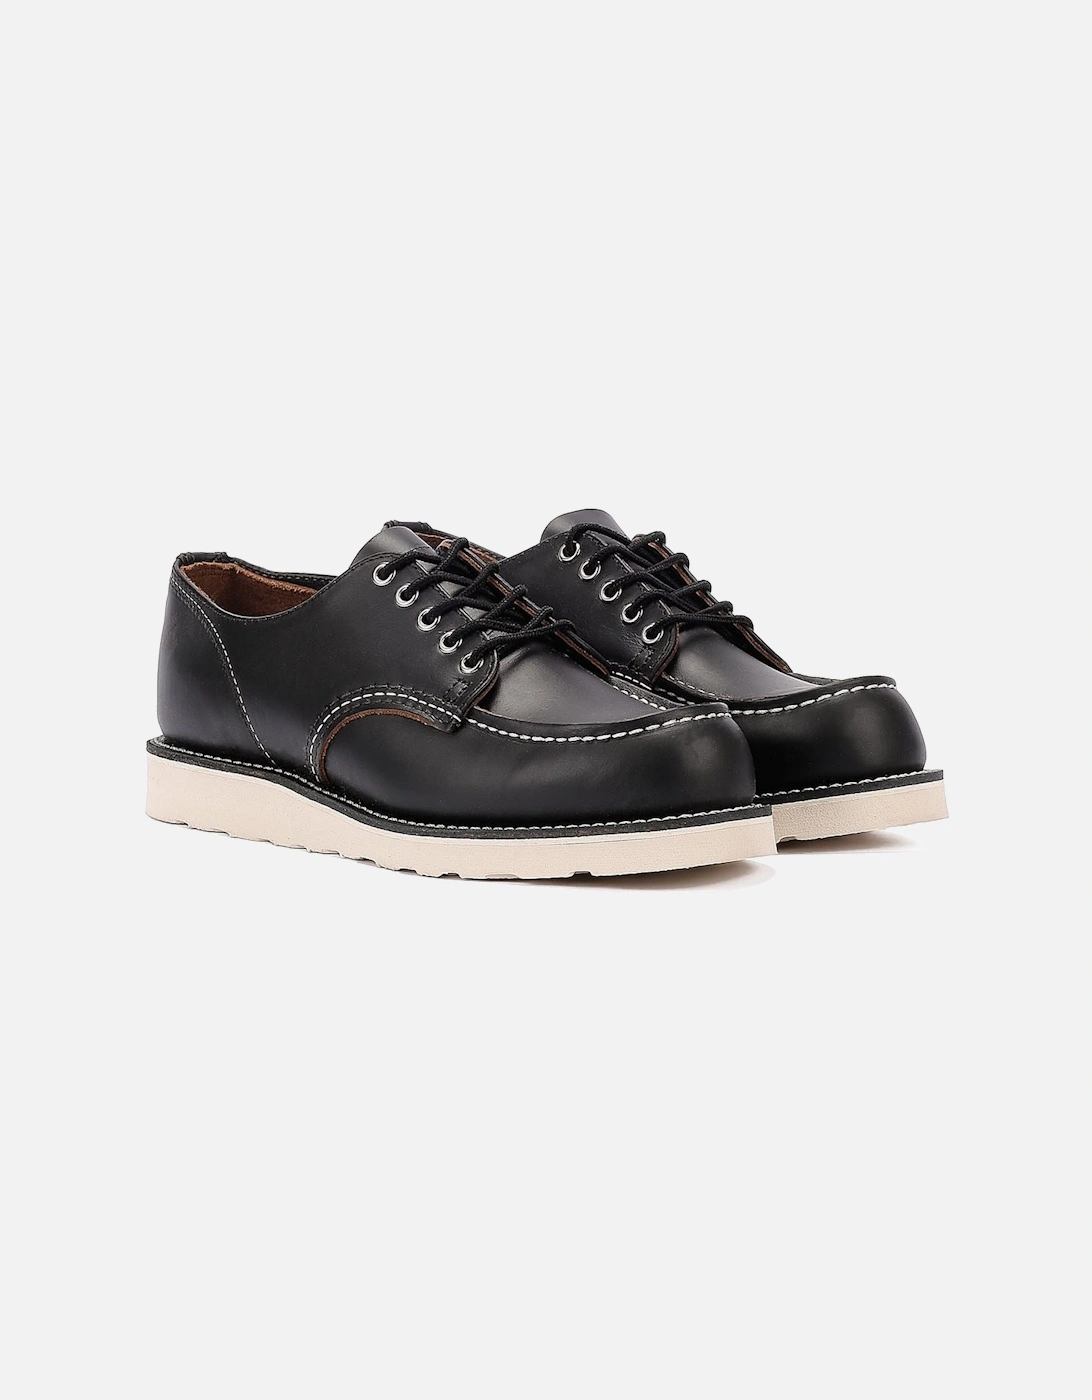 Shoes Shop Moc Oxford 8092 Men's Black Prairie Shoes, 9 of 8